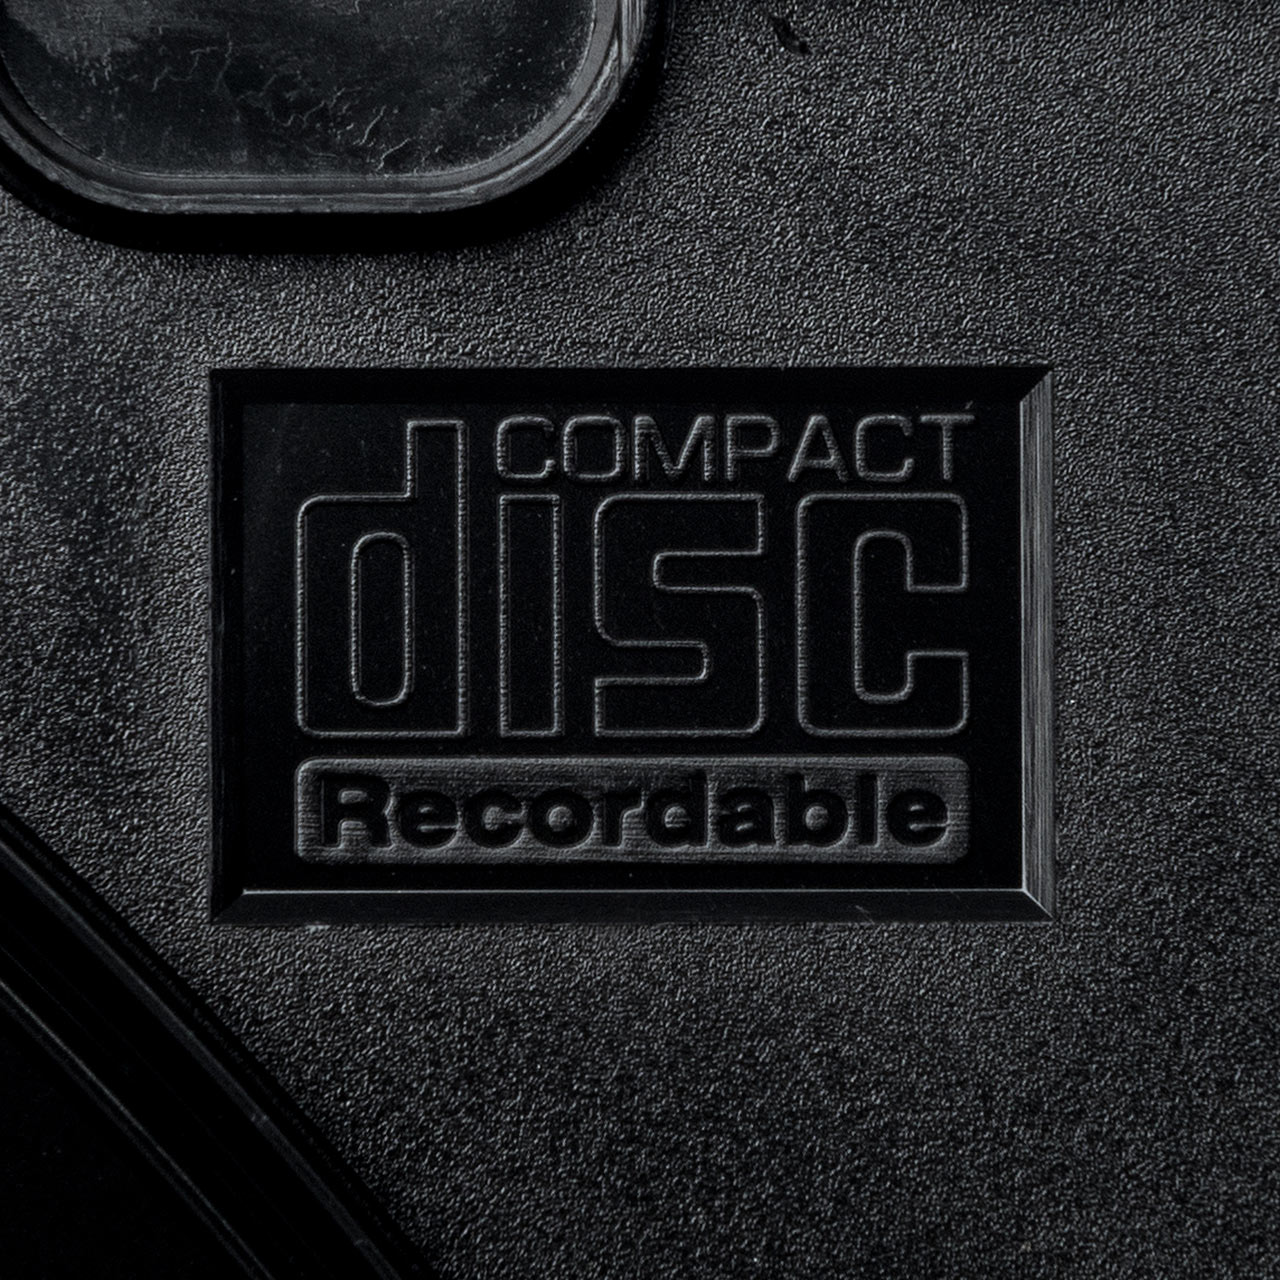 スーパースリムDVD・CD・ブルーレイケース（プラケース・ブラック・薄型5.2mm・500枚） 200-FCD031-500BK